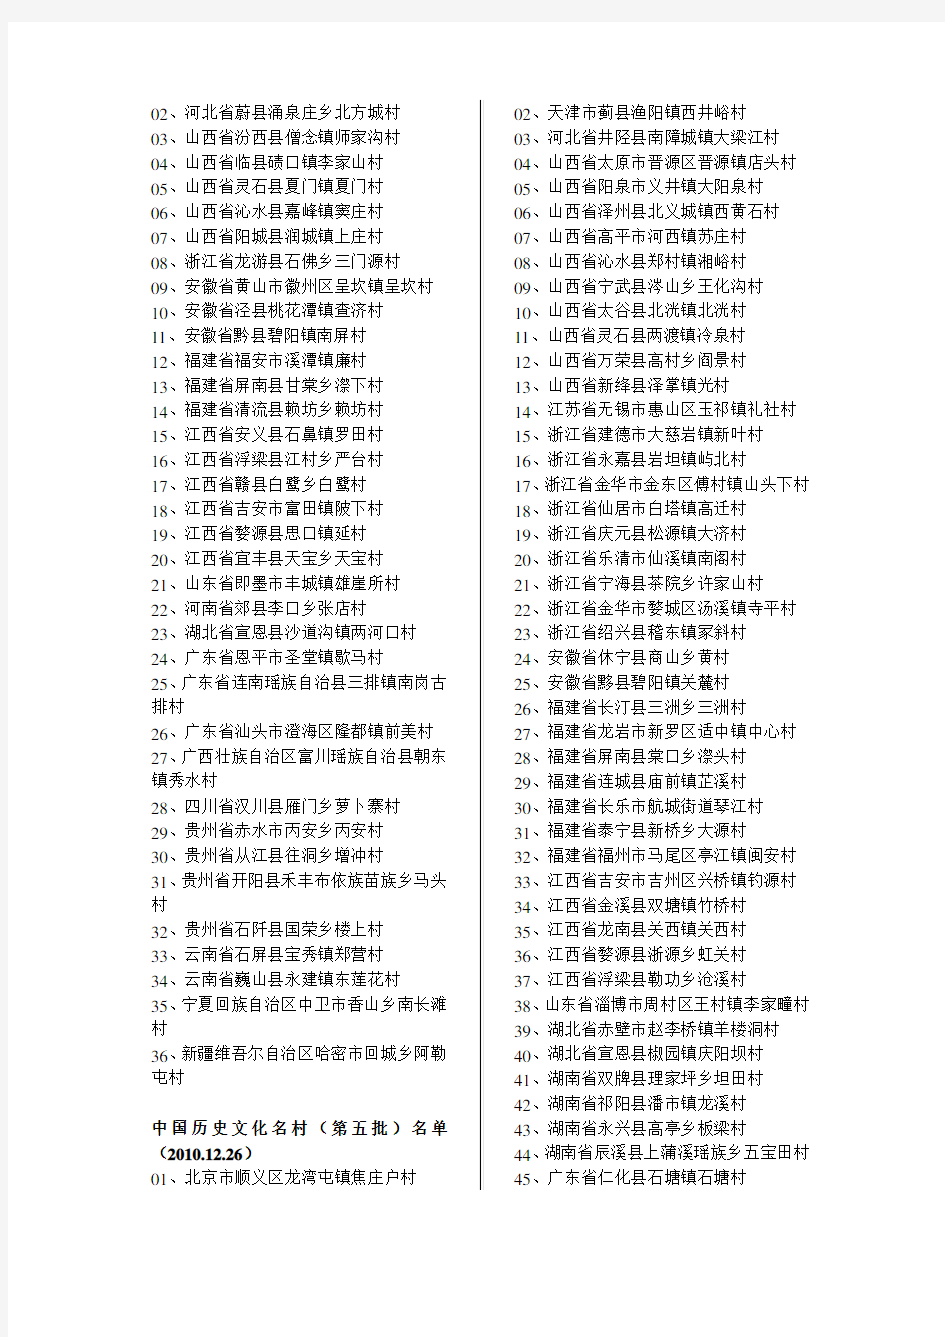 中国历史文化名村名录(至2014)